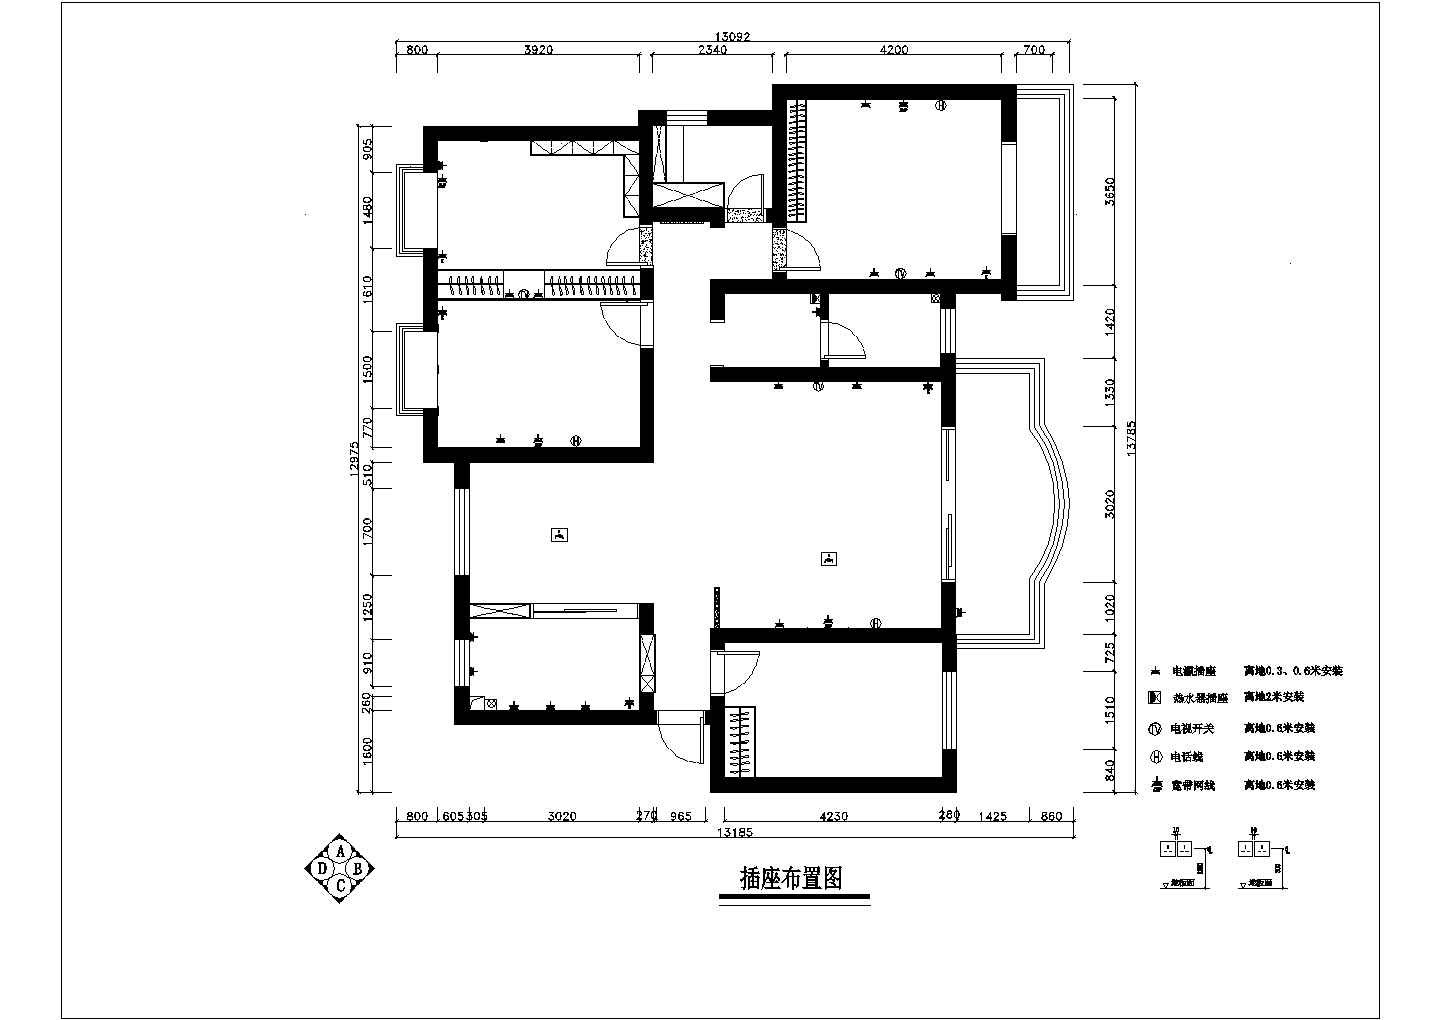 某地4室两厅中式风格家装施工图及部分效果图